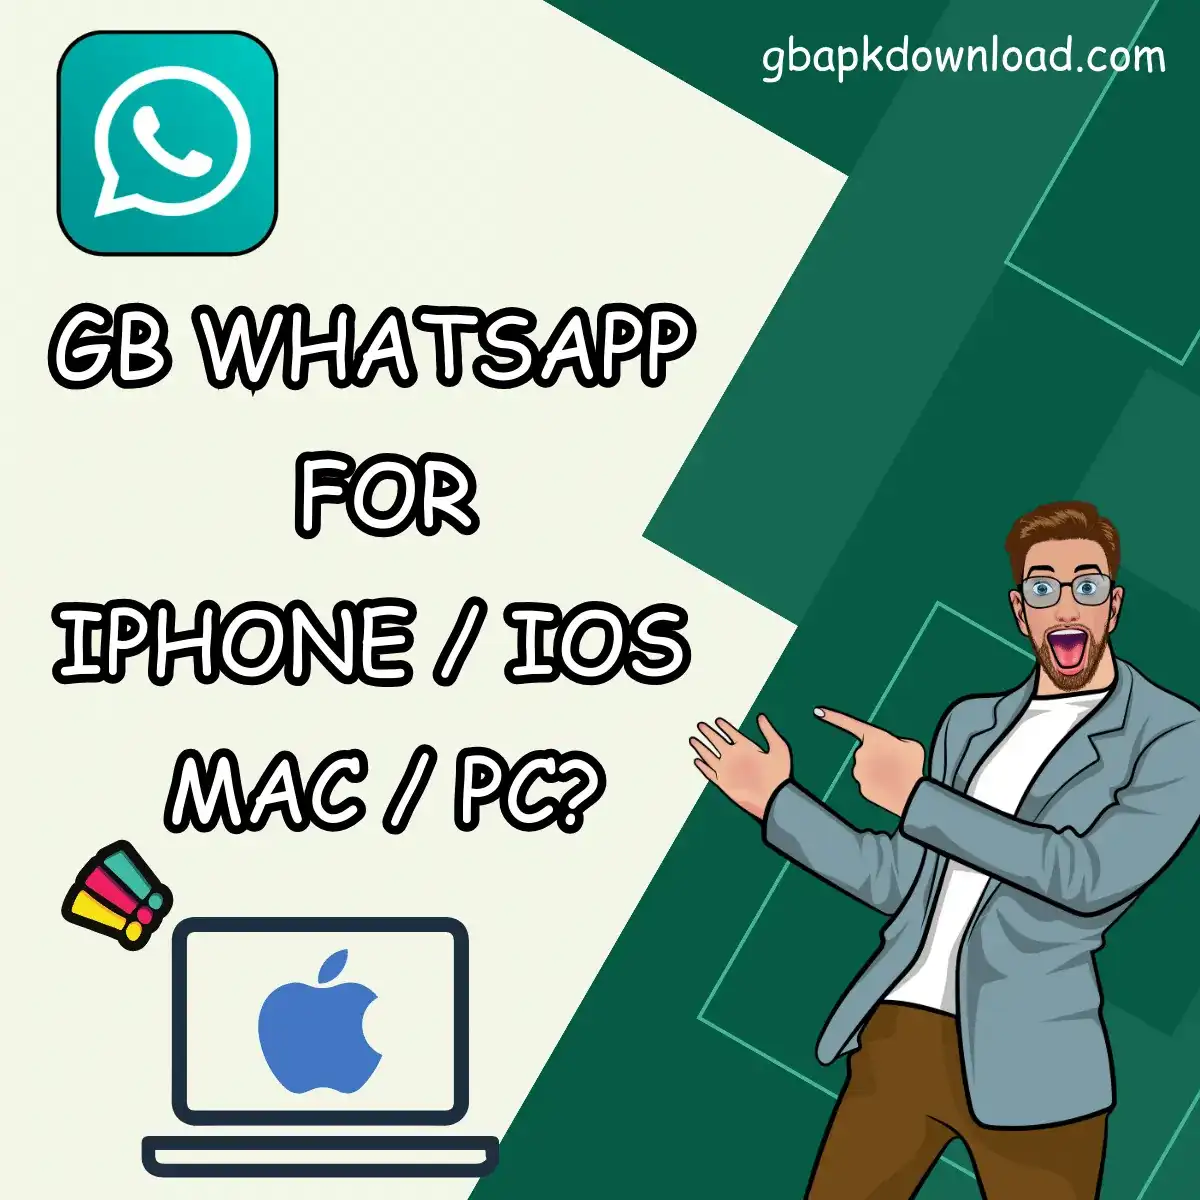 GB WhatsApp for iPhone / IOS / MAC / PC